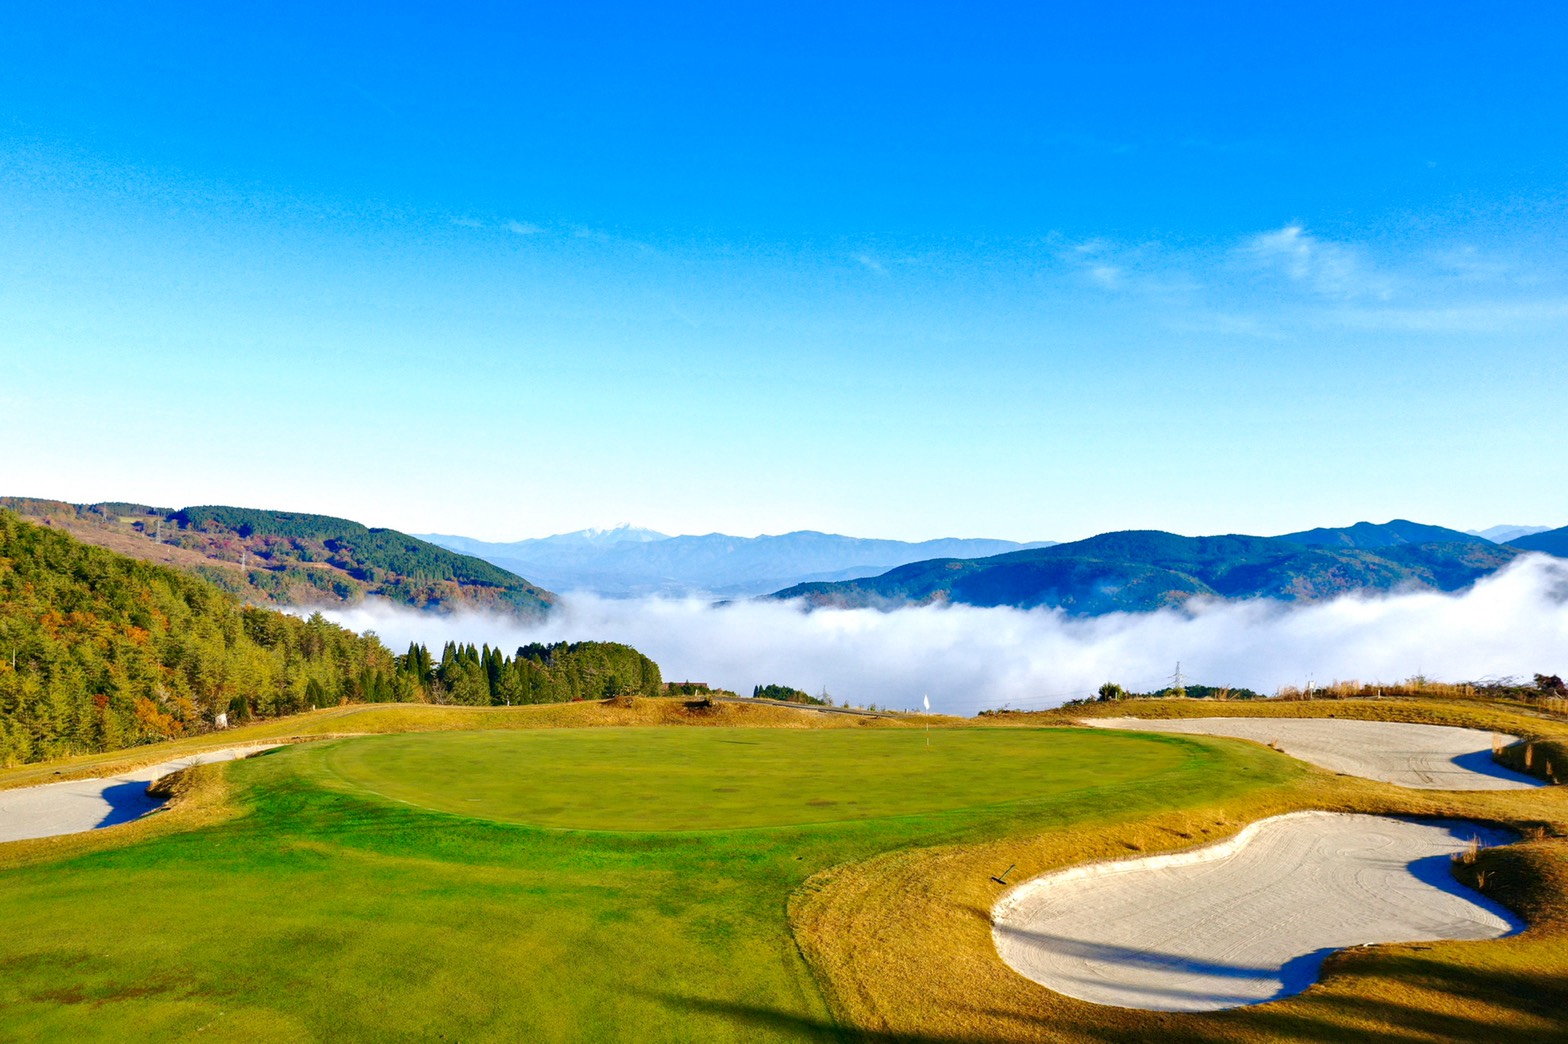 GDO景観が高評価なゴルフ場TOP30に選ばれました。